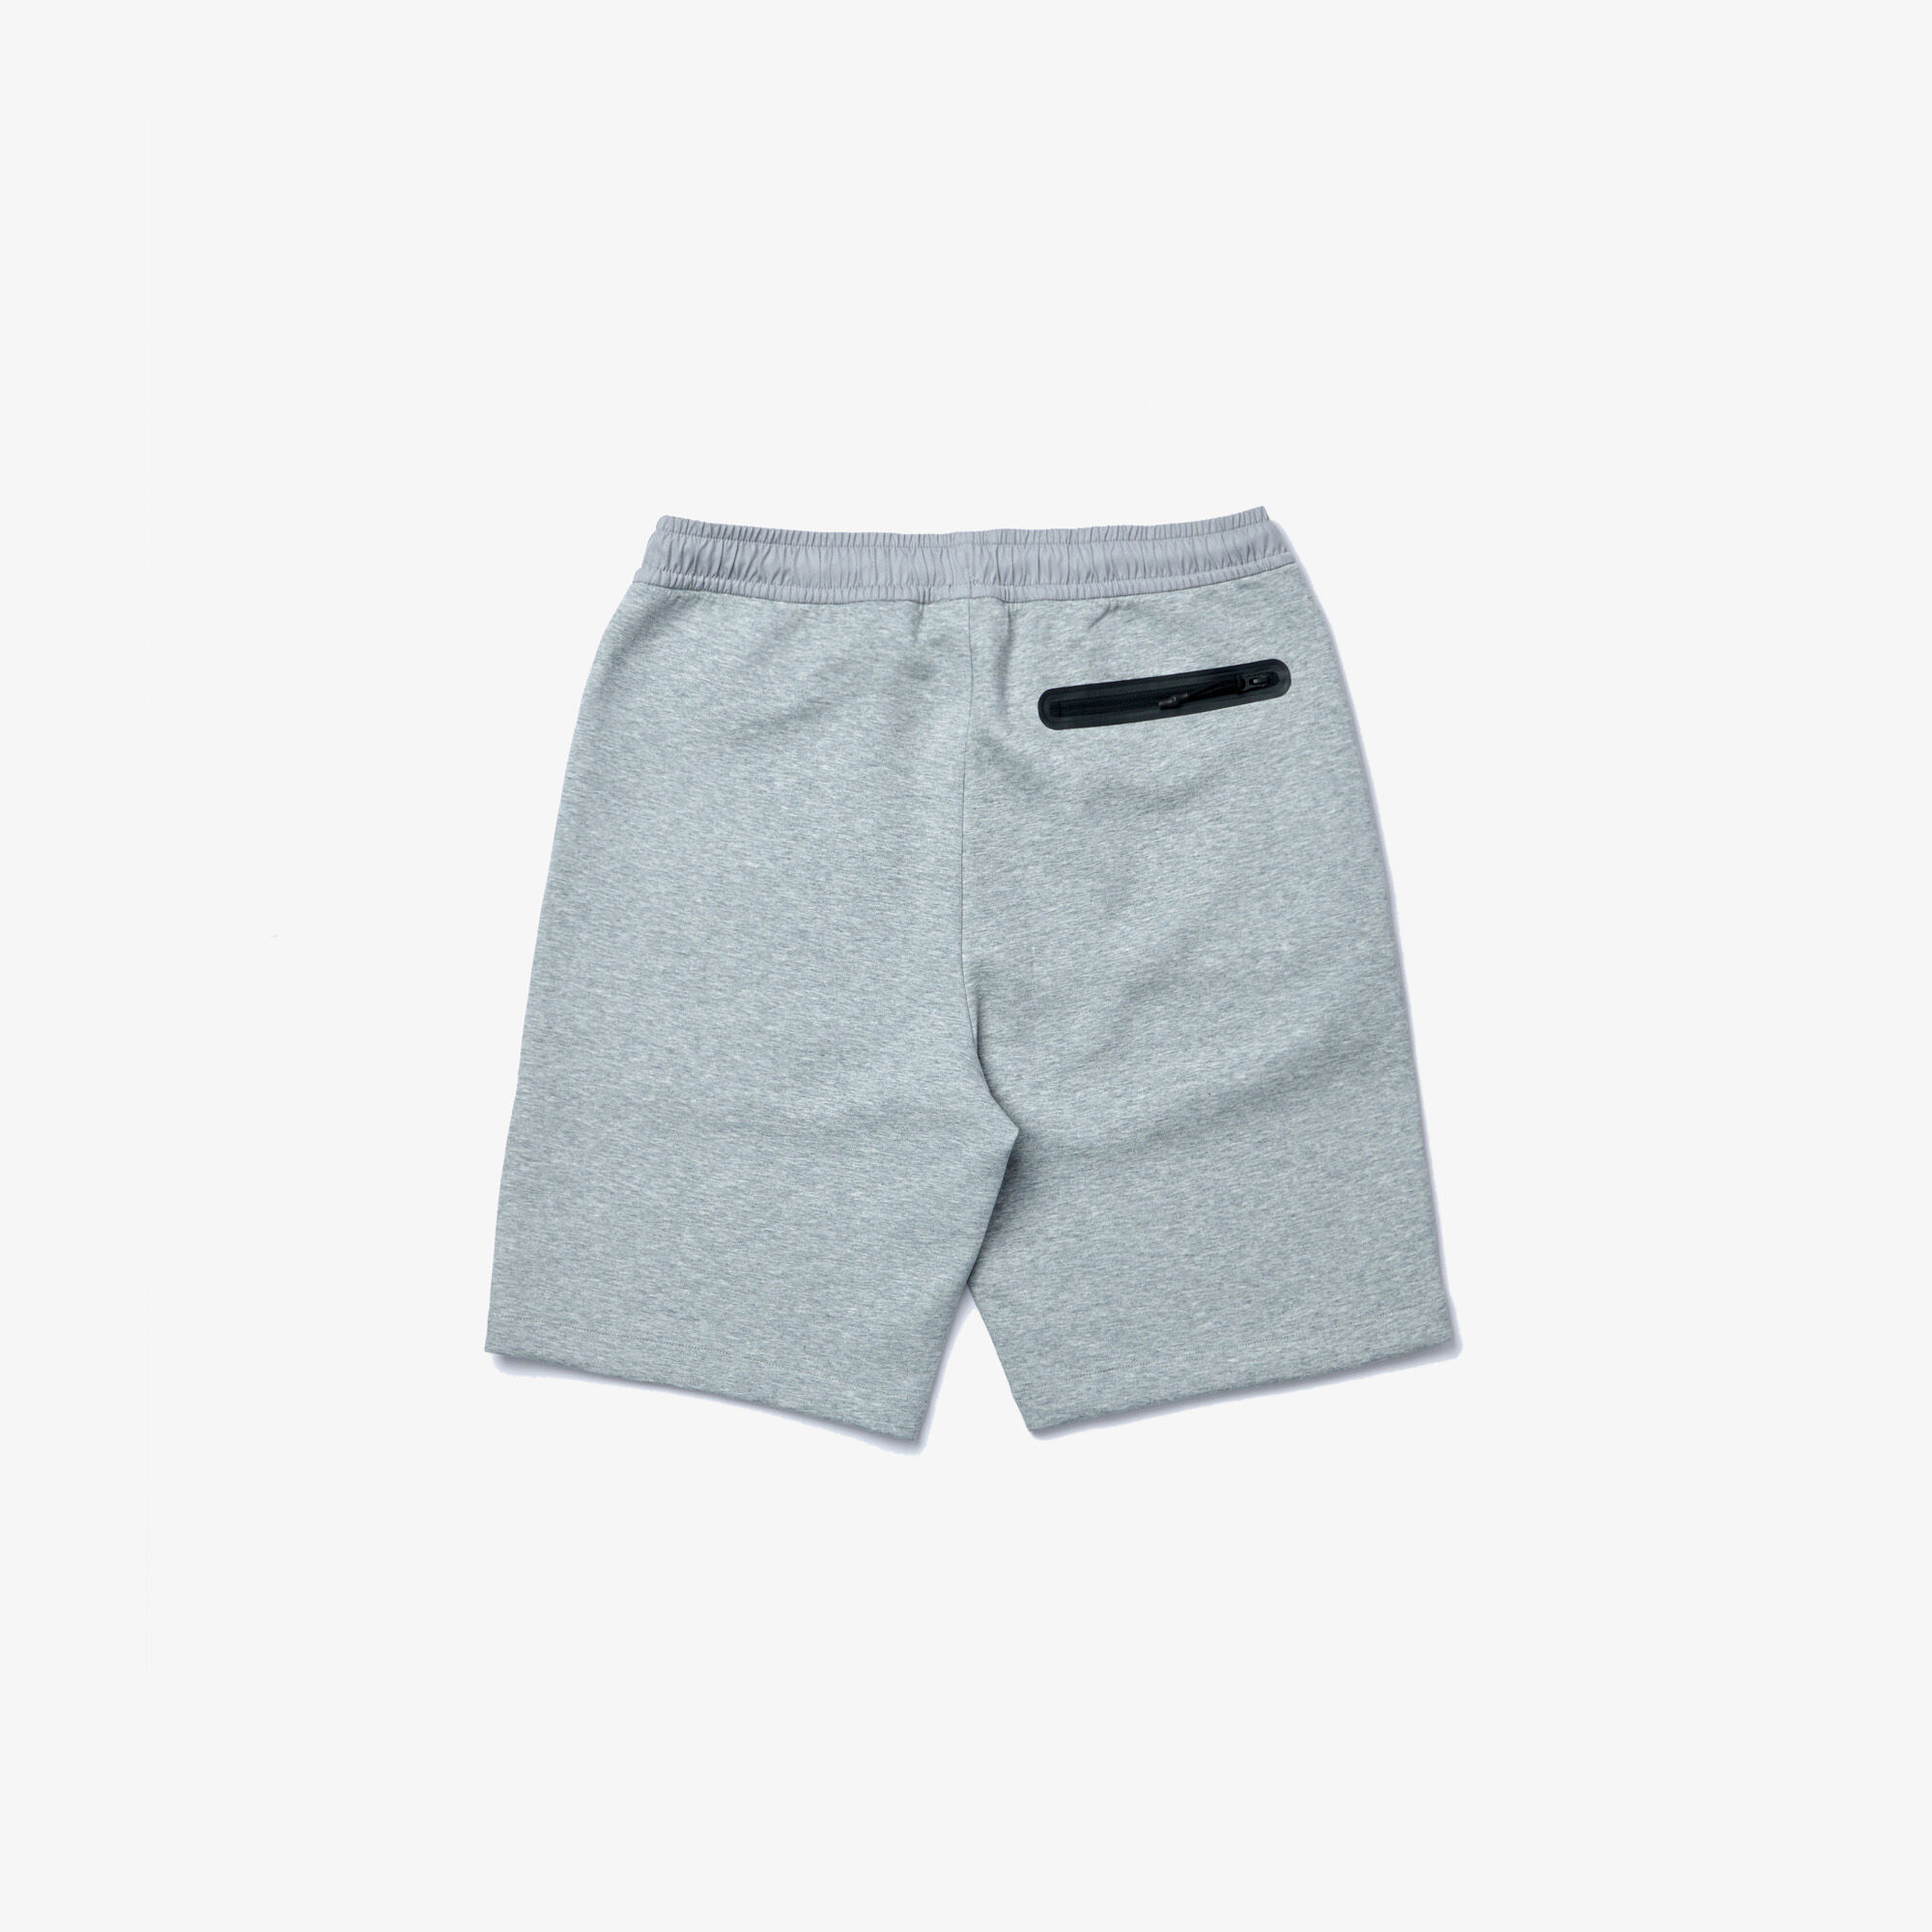 Men’s Bimaterial Cotton Blend Shorts